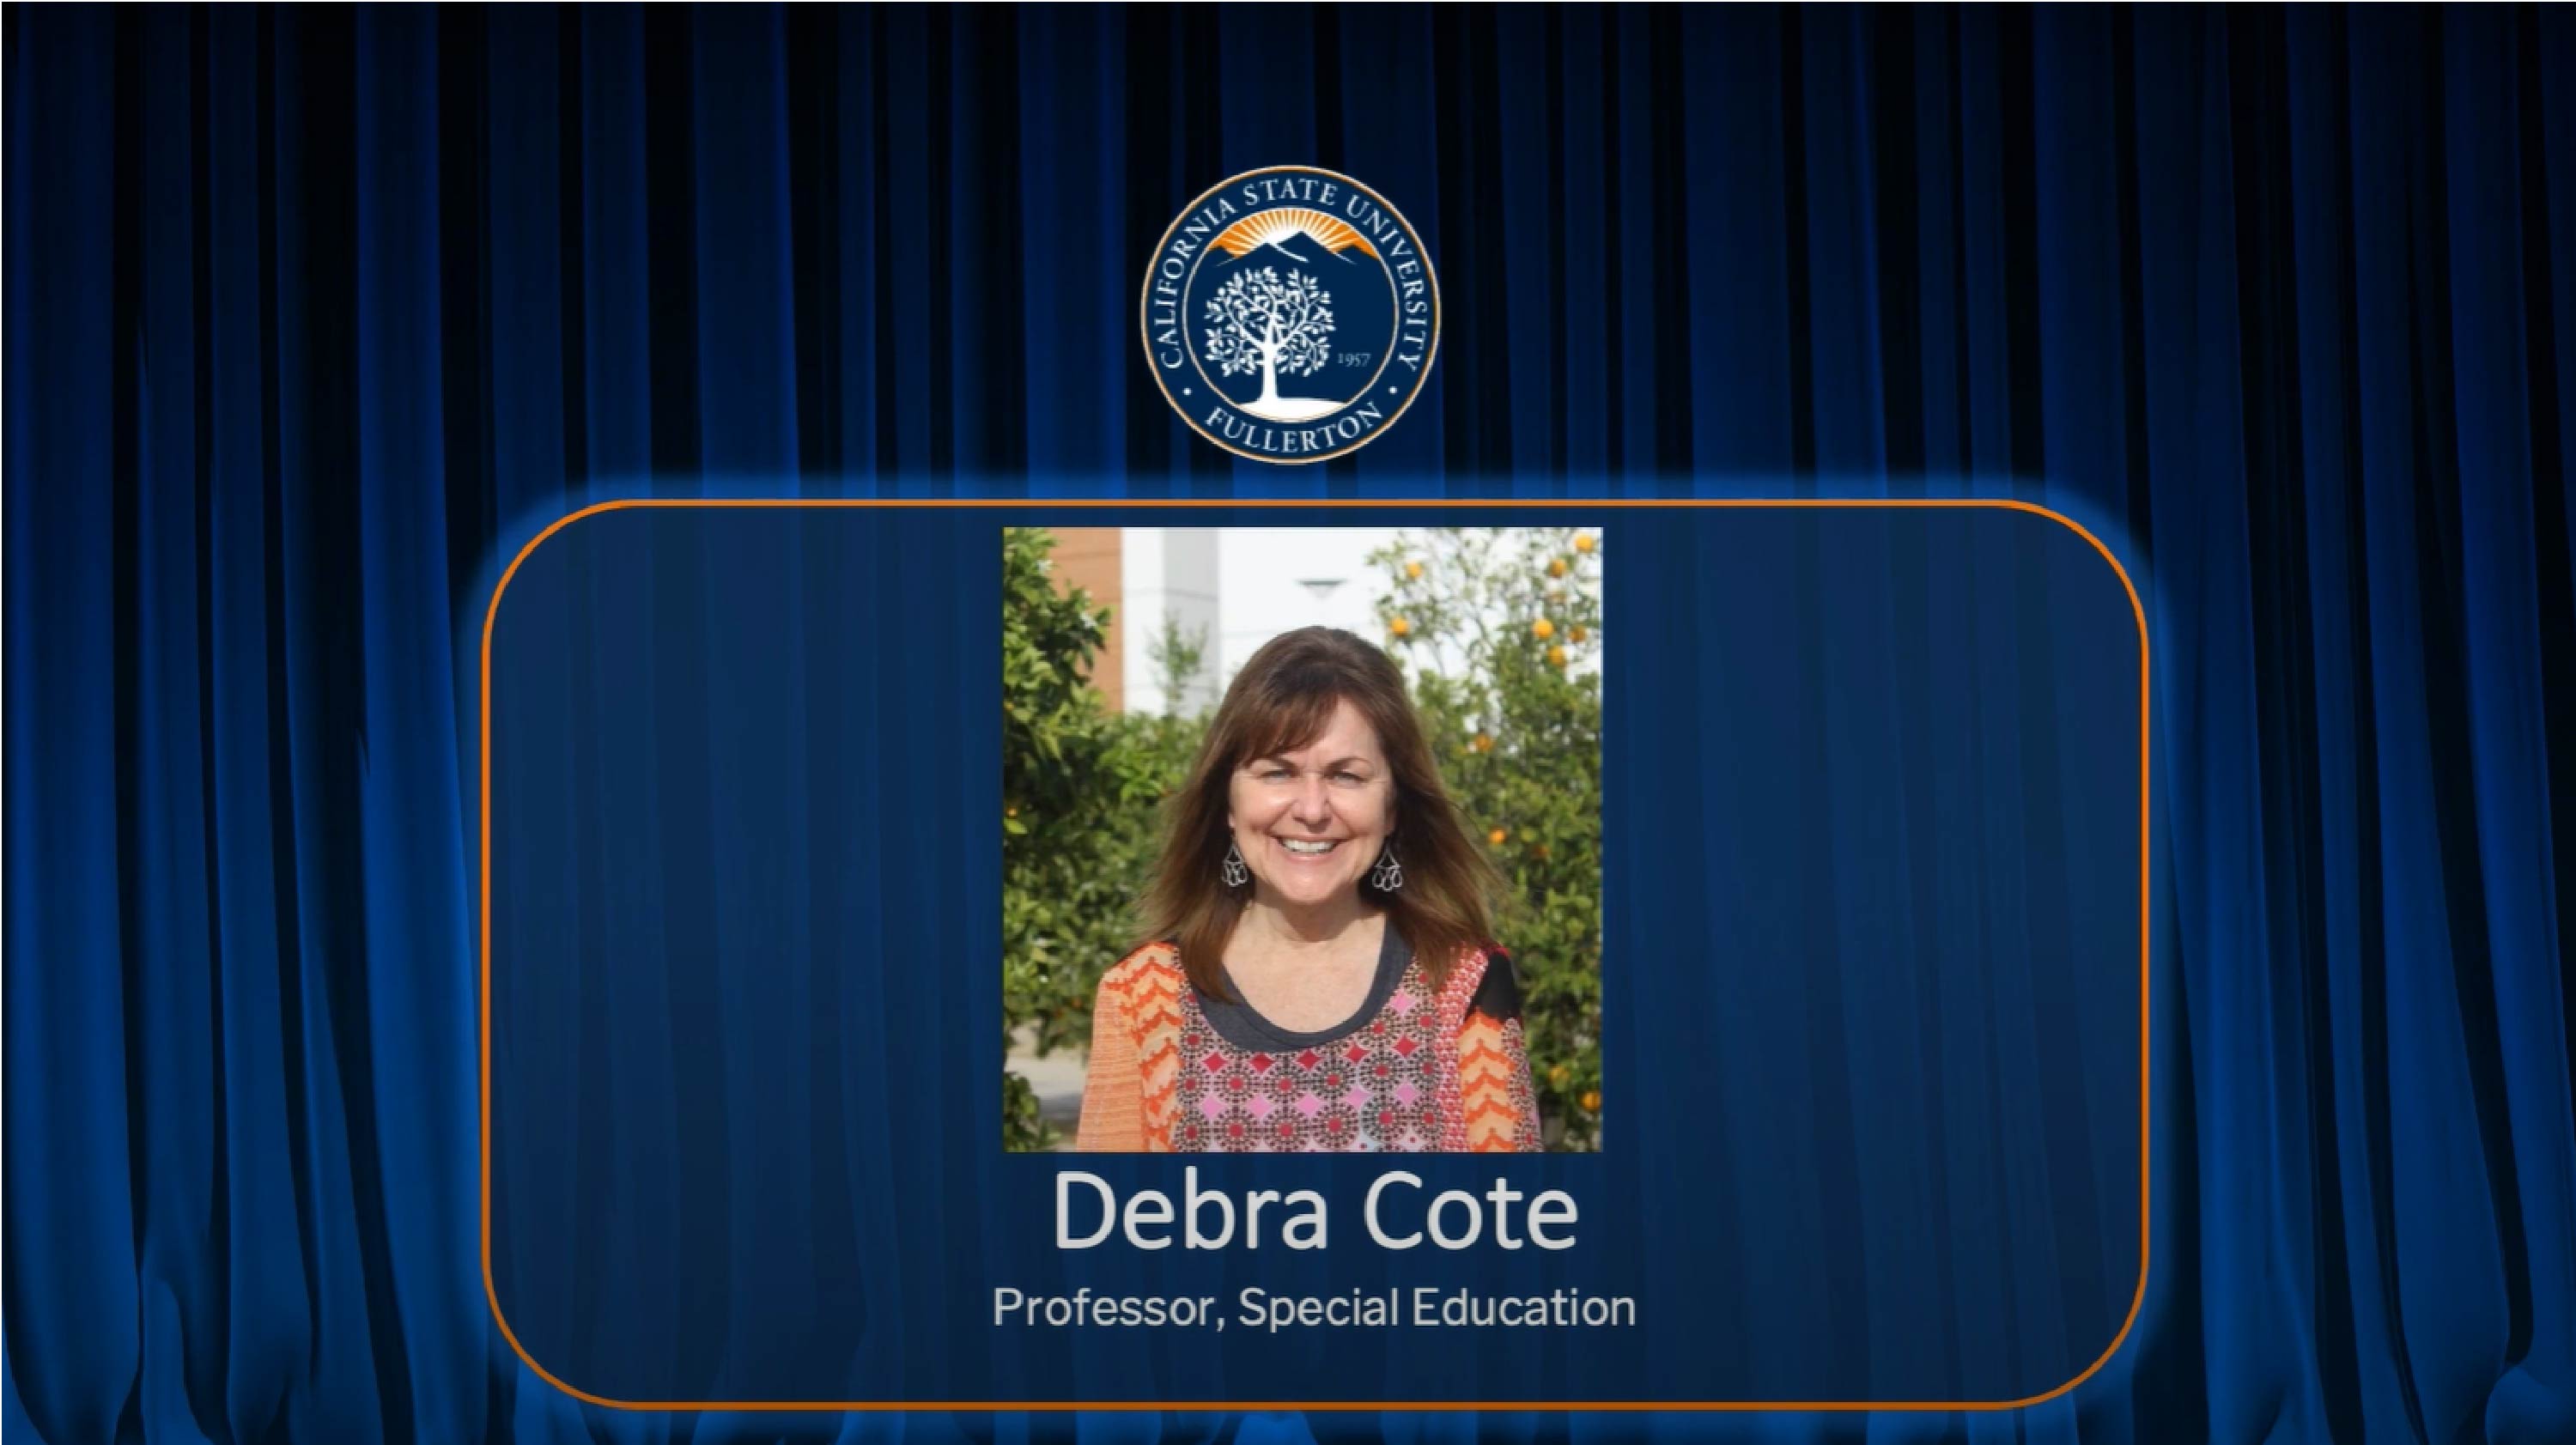 Congratulations Debra Cote